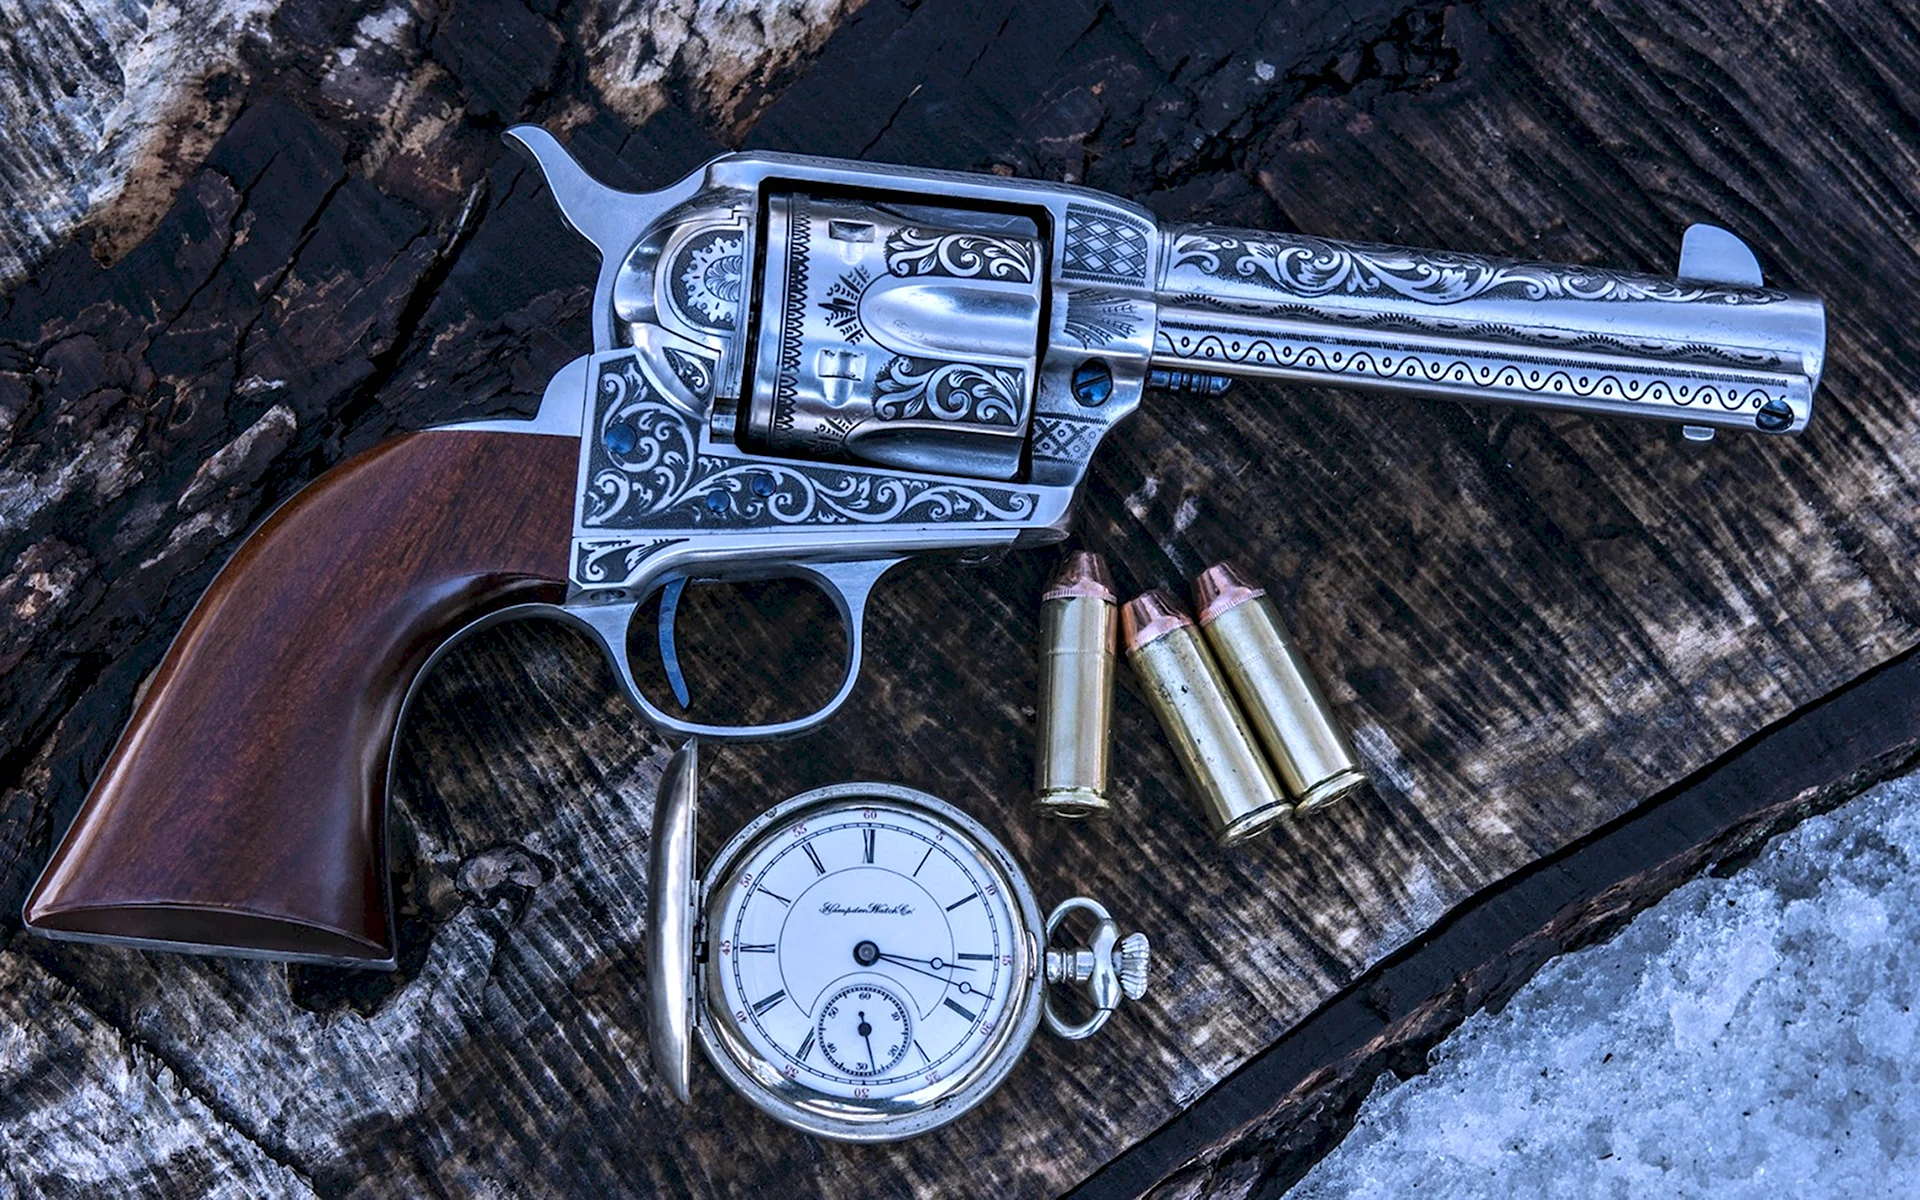 Револьвер Кольт 1835